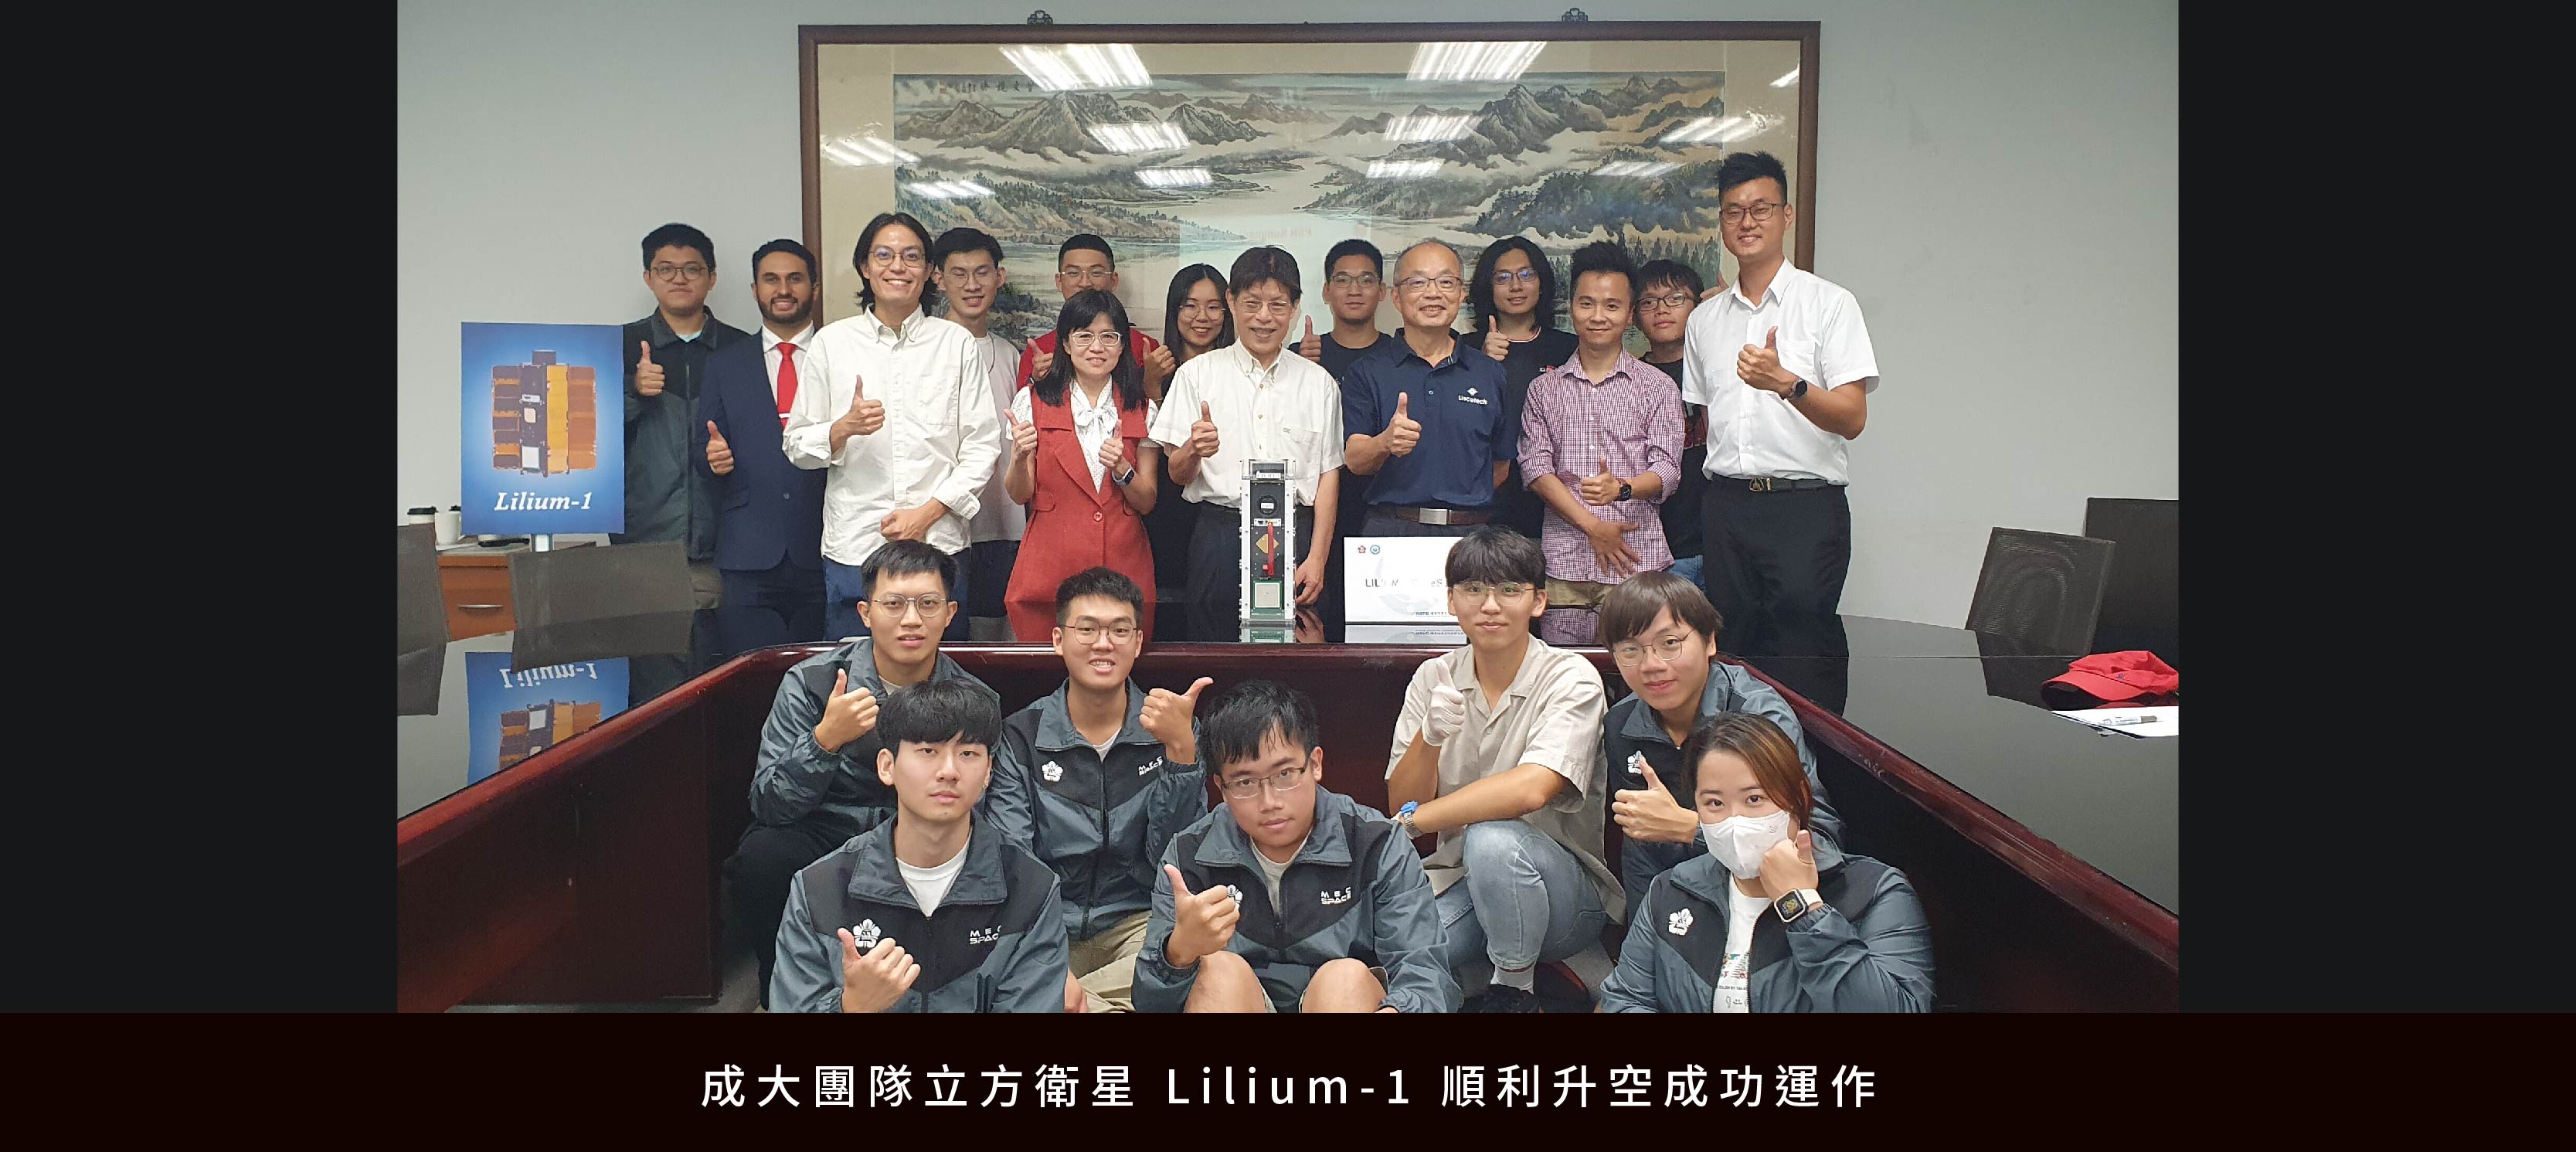 成大團隊立方衛星 Lilium-1 順利升空成功運作